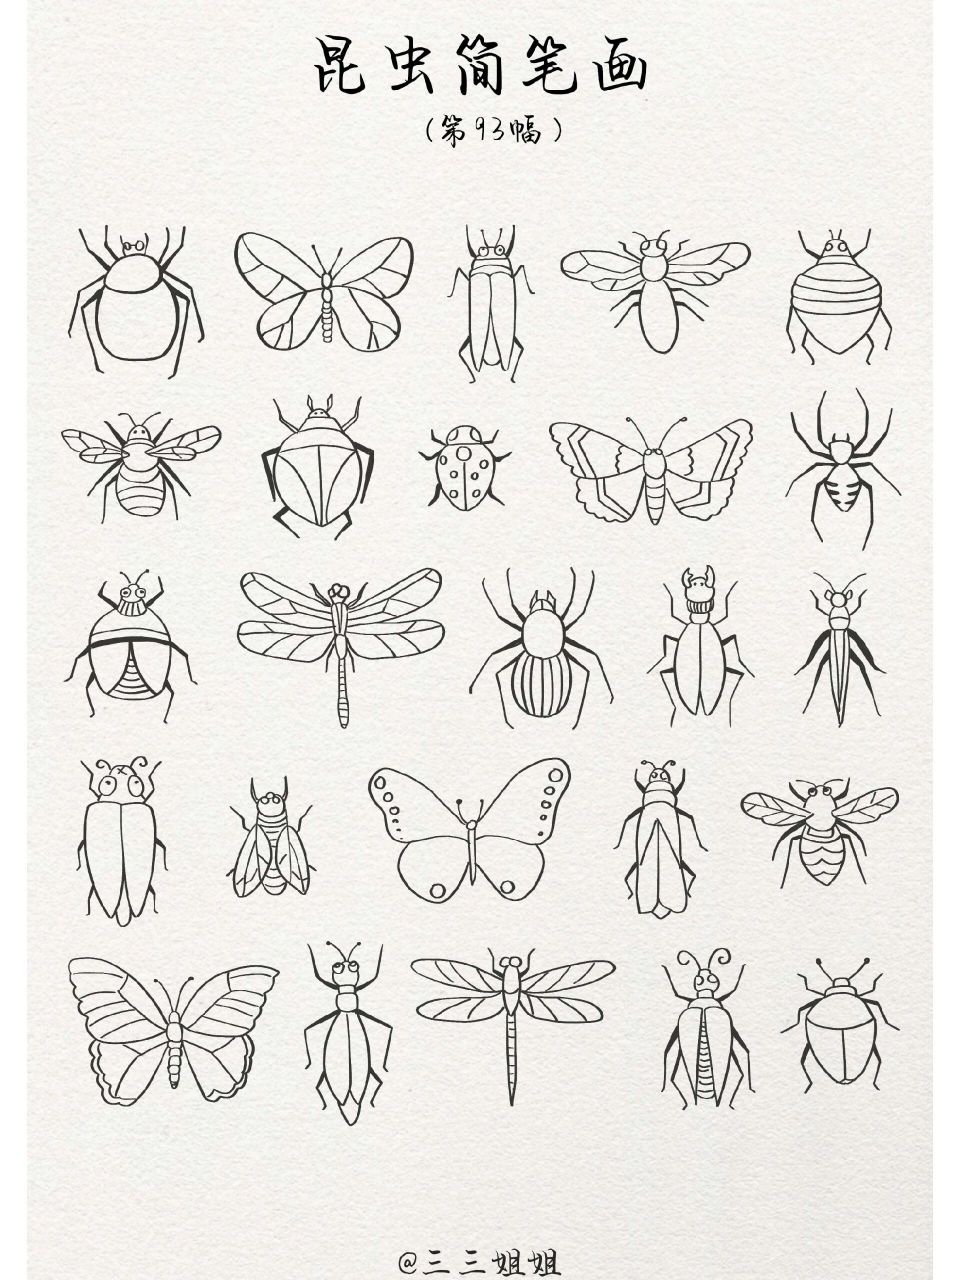 各种昆虫简笔画图片图片